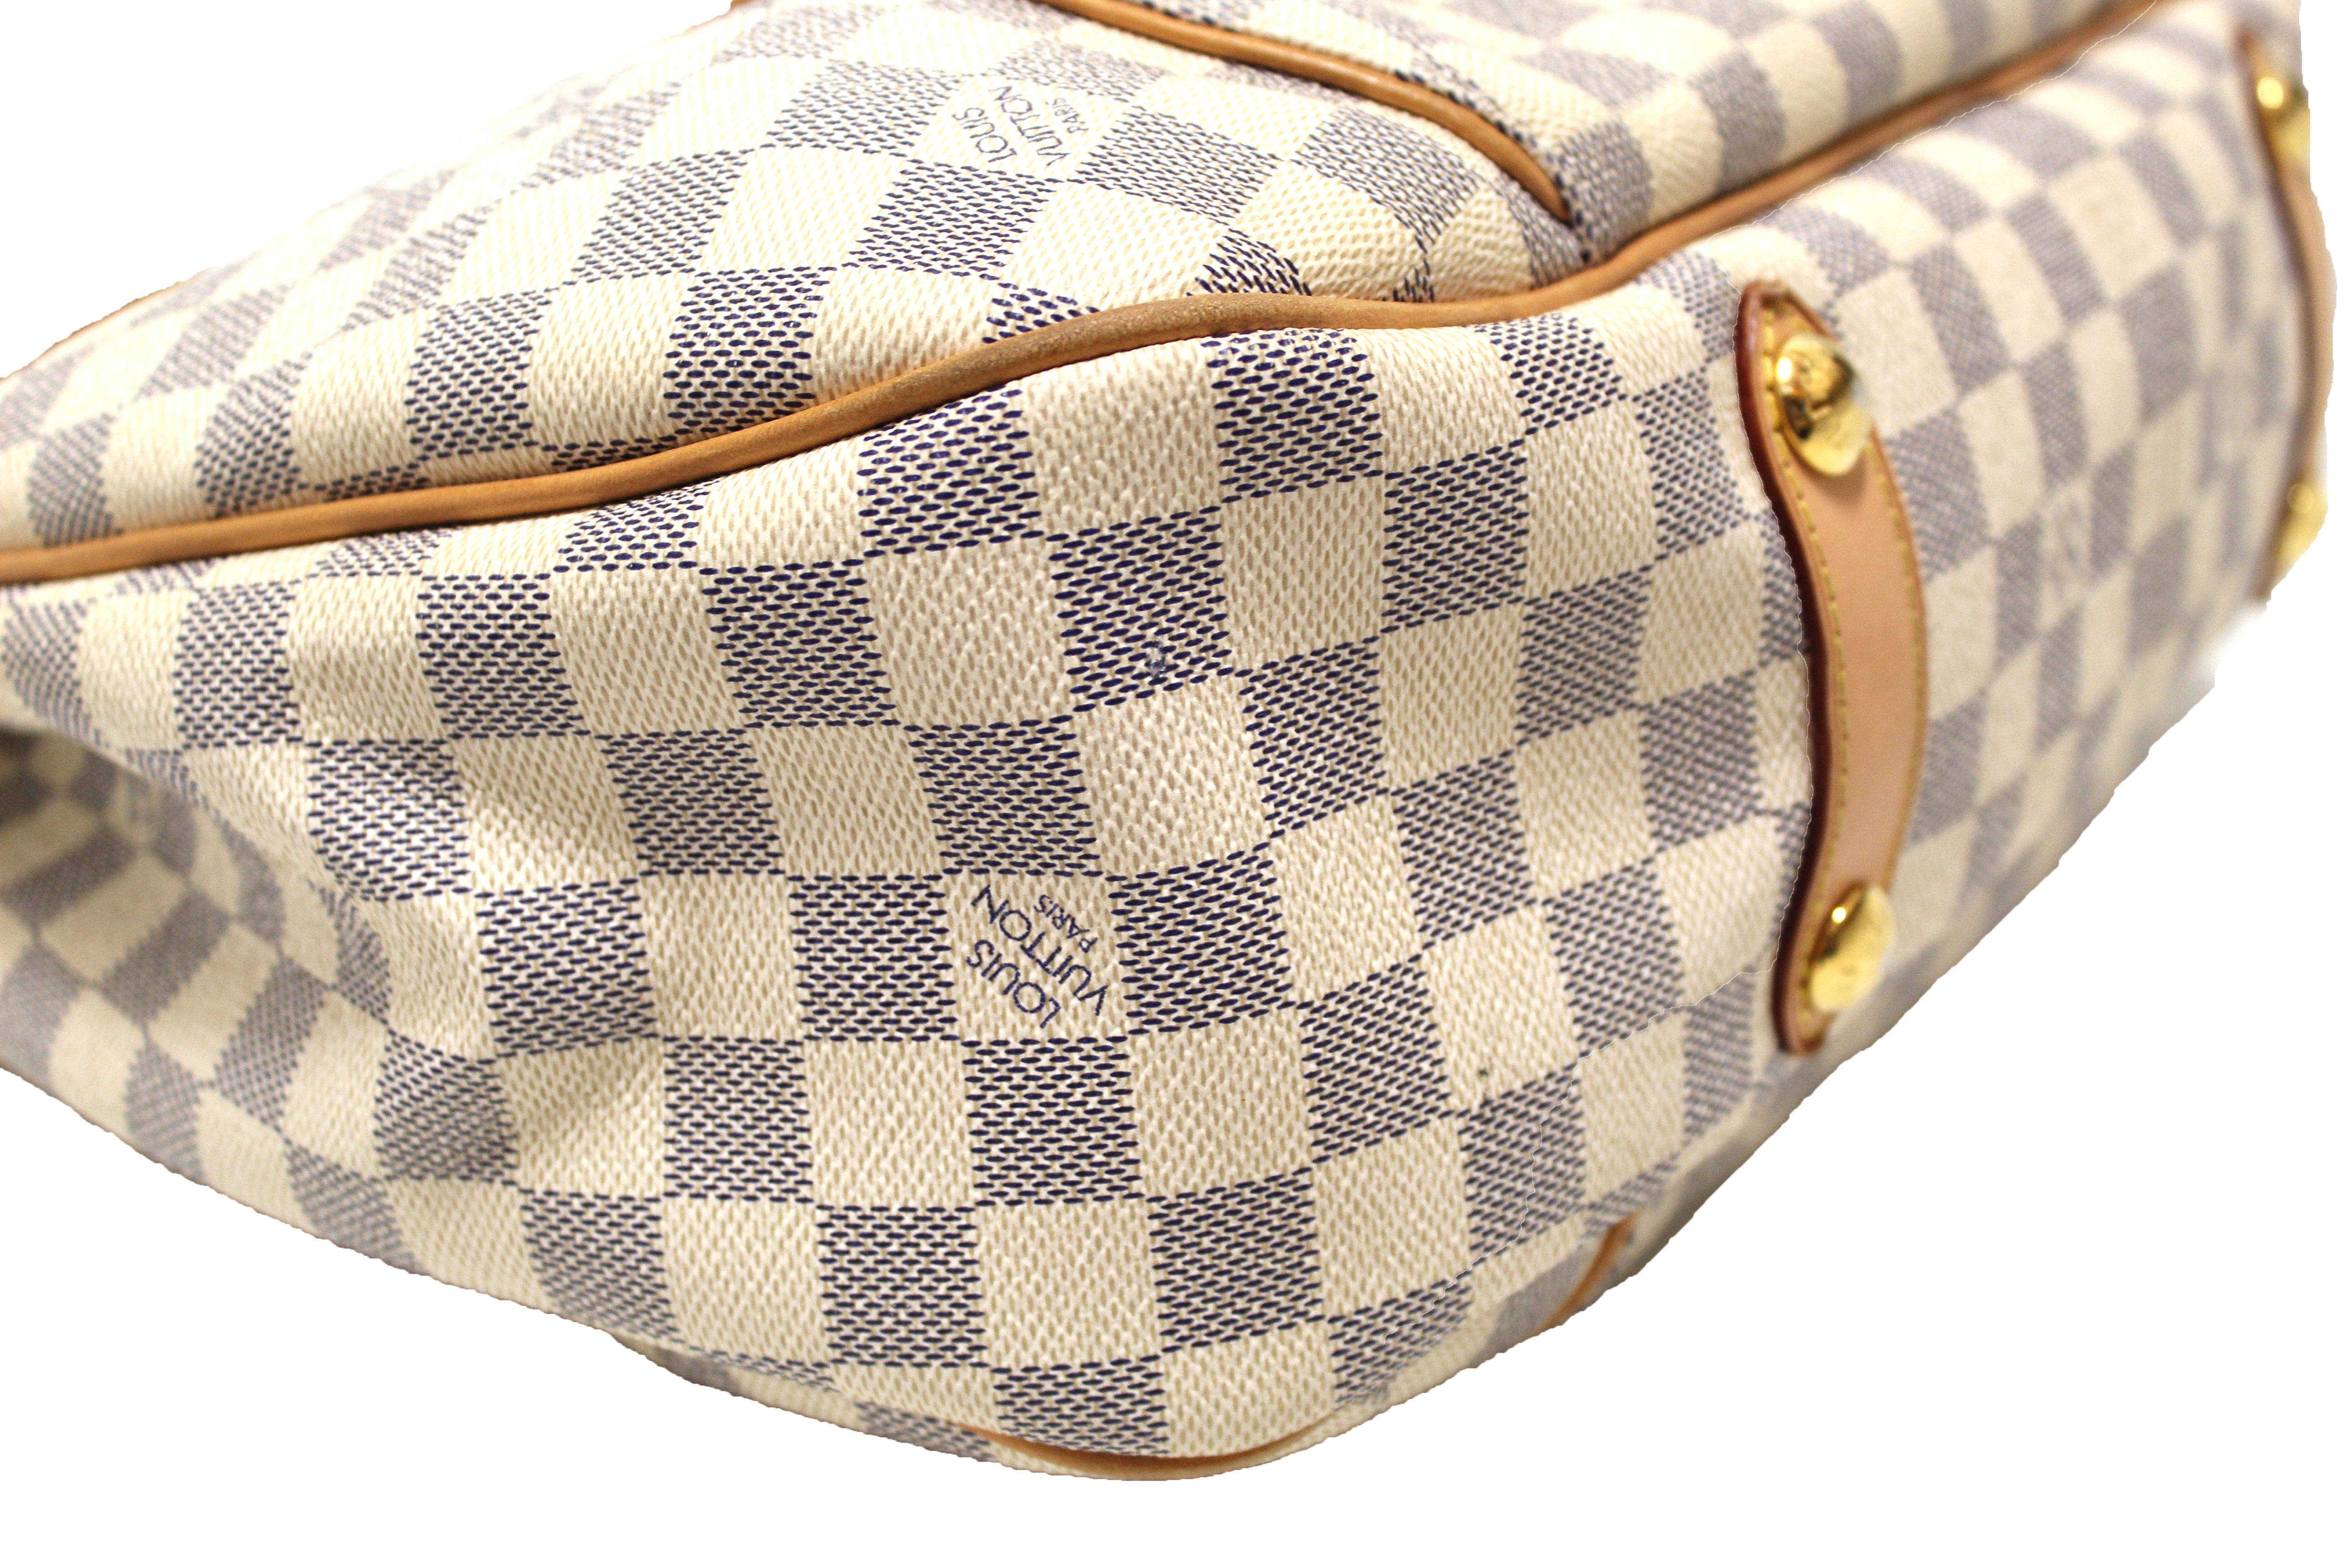 Authentic Louis Vuitton Damier Azur Galliera PM Shoulder Bag